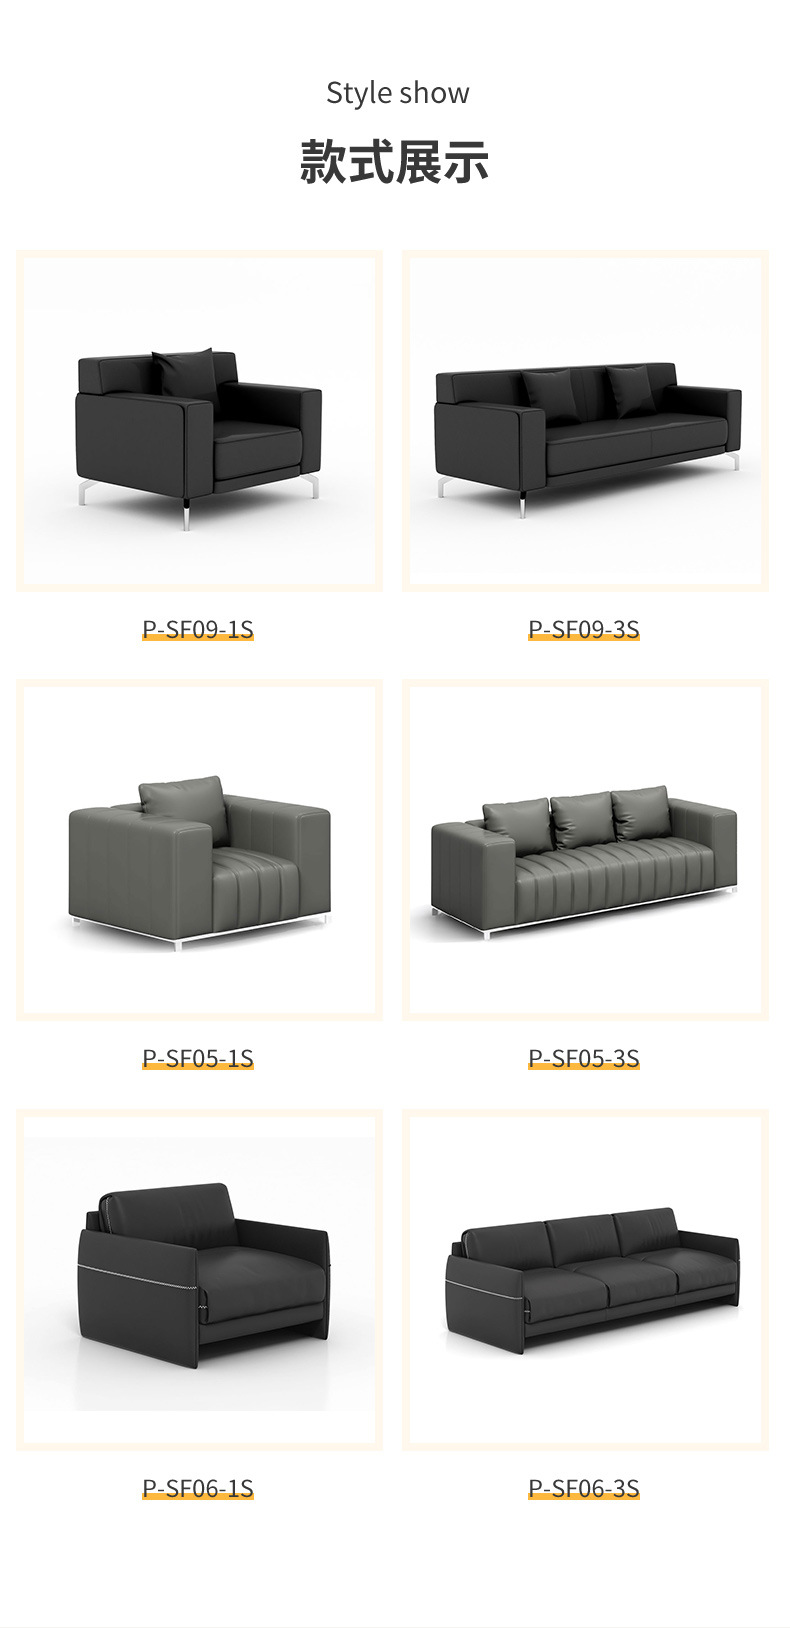 7沙发款式.jpg